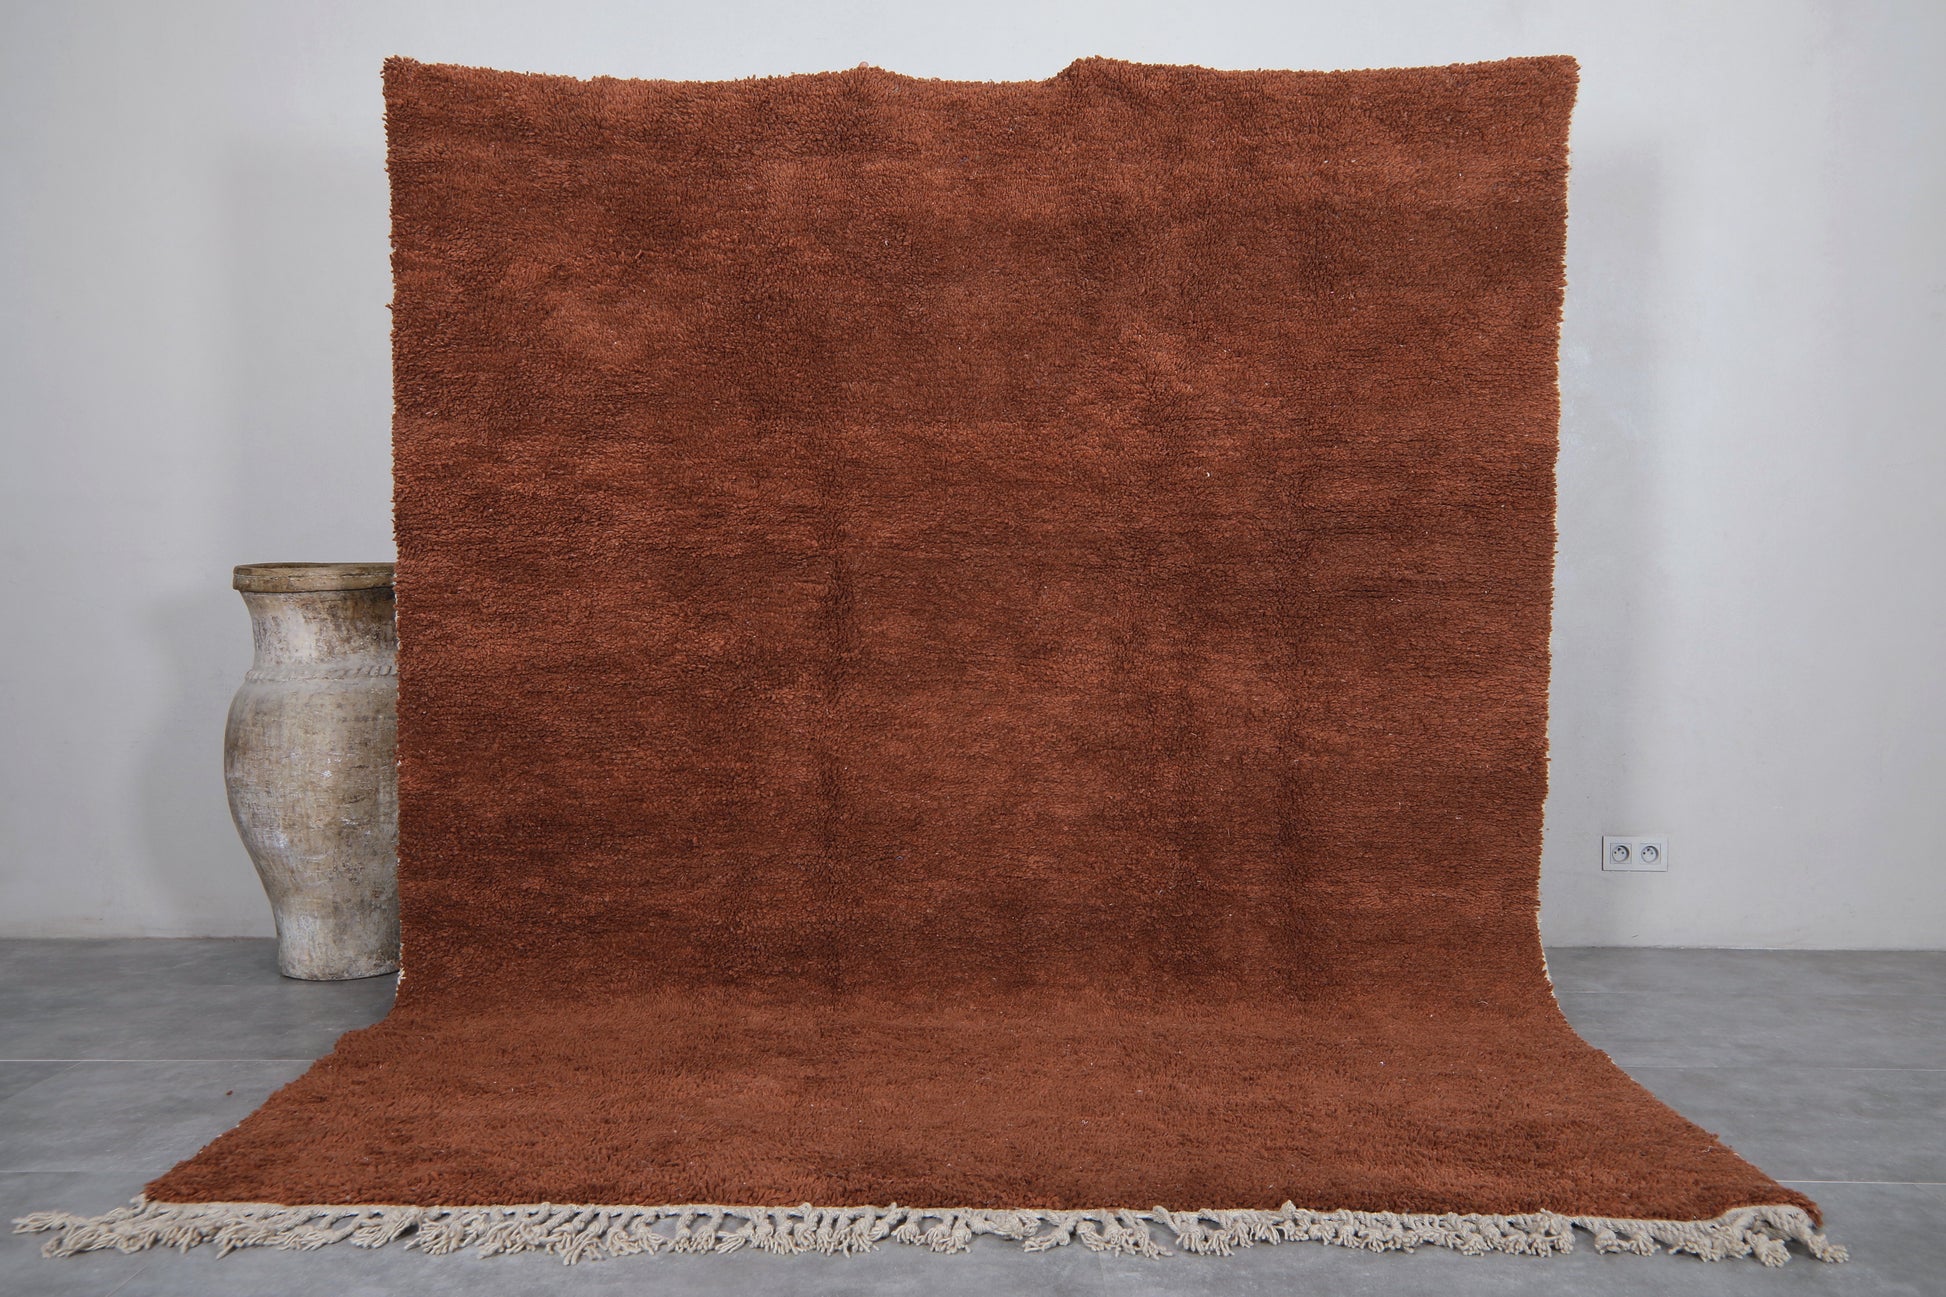 Moroccan rug 7.6 X 9.6 Feet - Beni ourain rugs